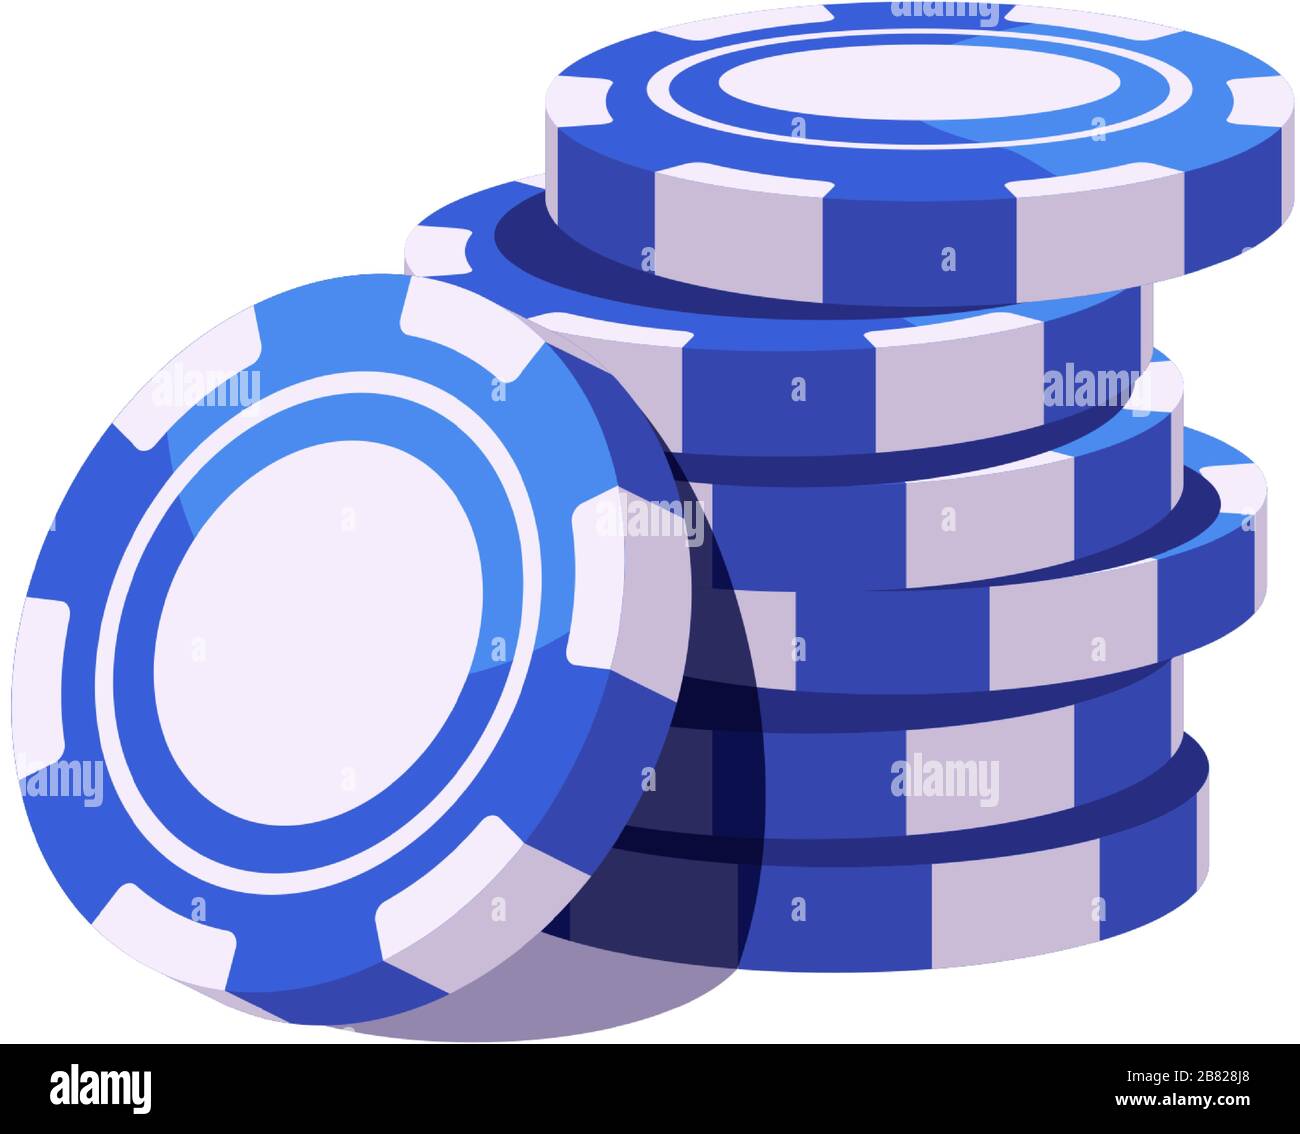 Blue poker chips stack. Casino illustration Stock Vector